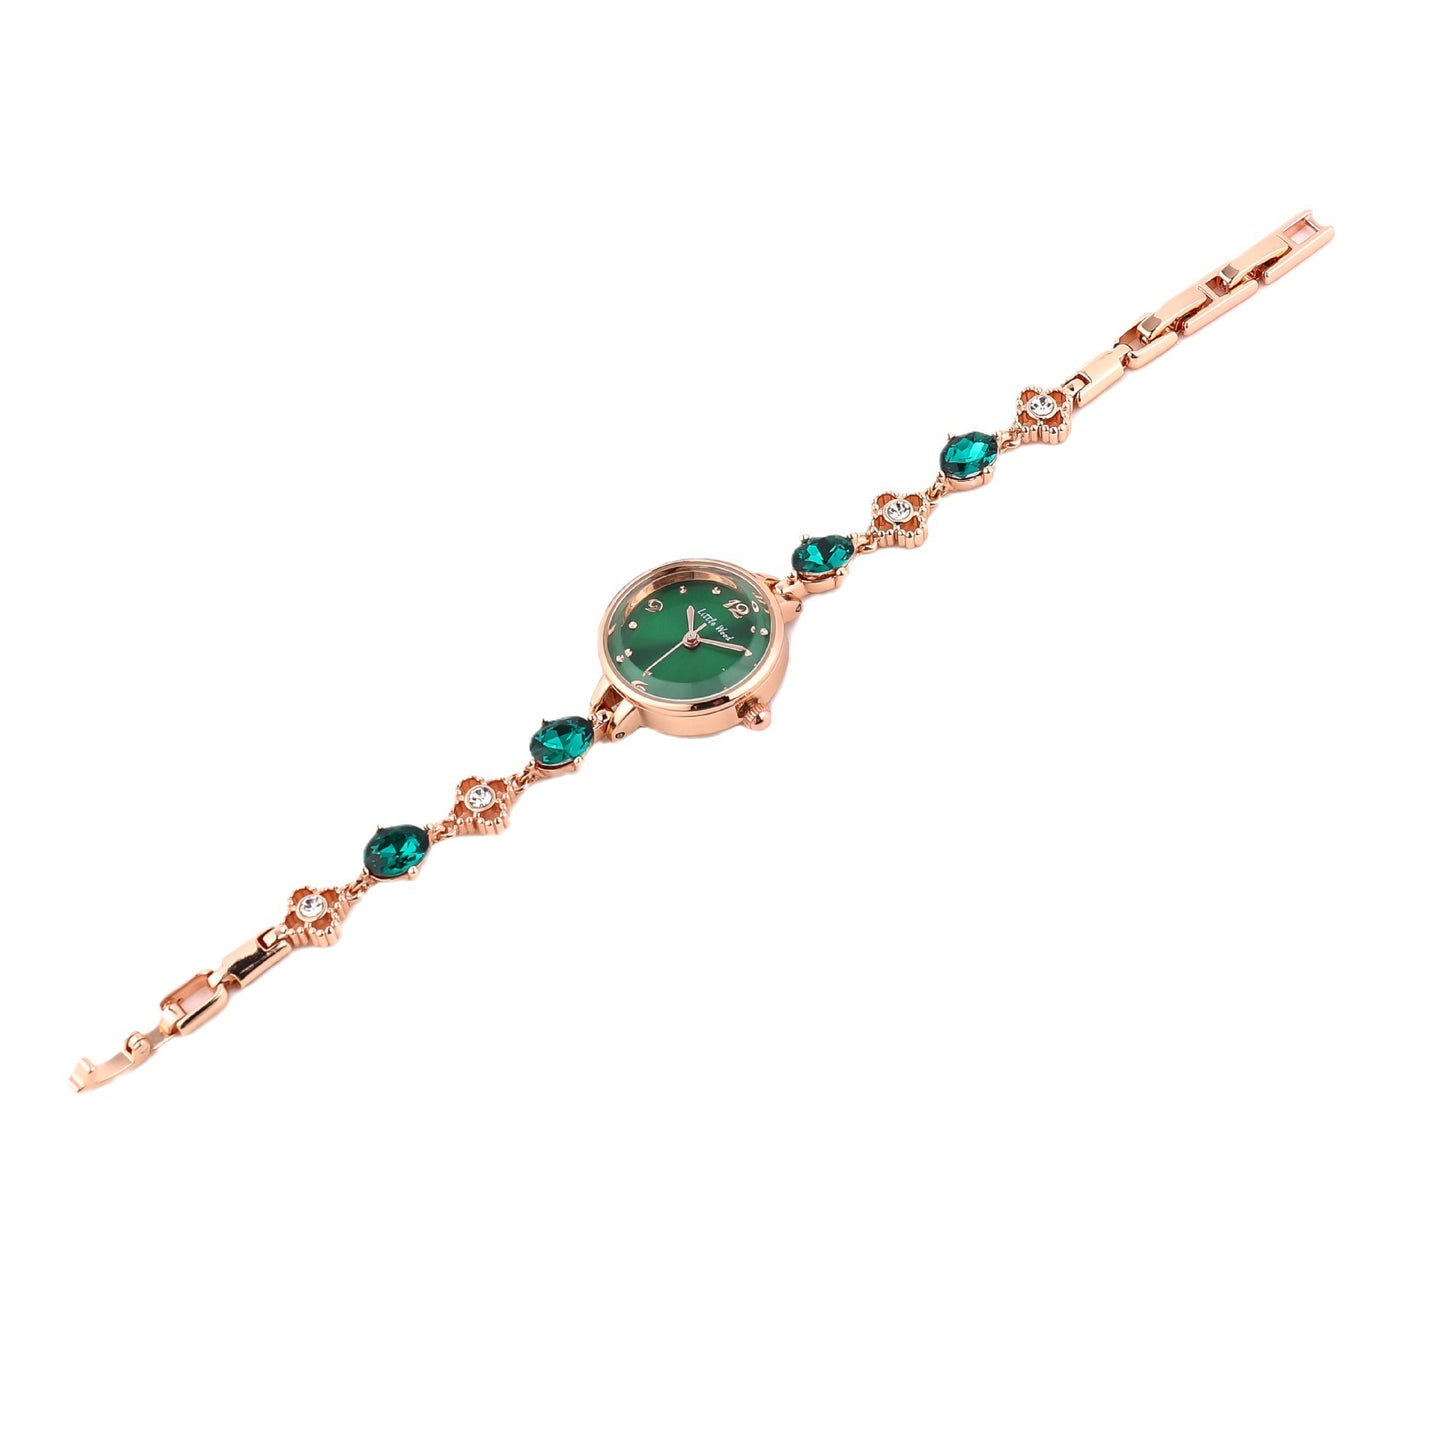 Small Green Watch Simple Elegant Women's Bracelet Watch Gift Watch Jade Watch